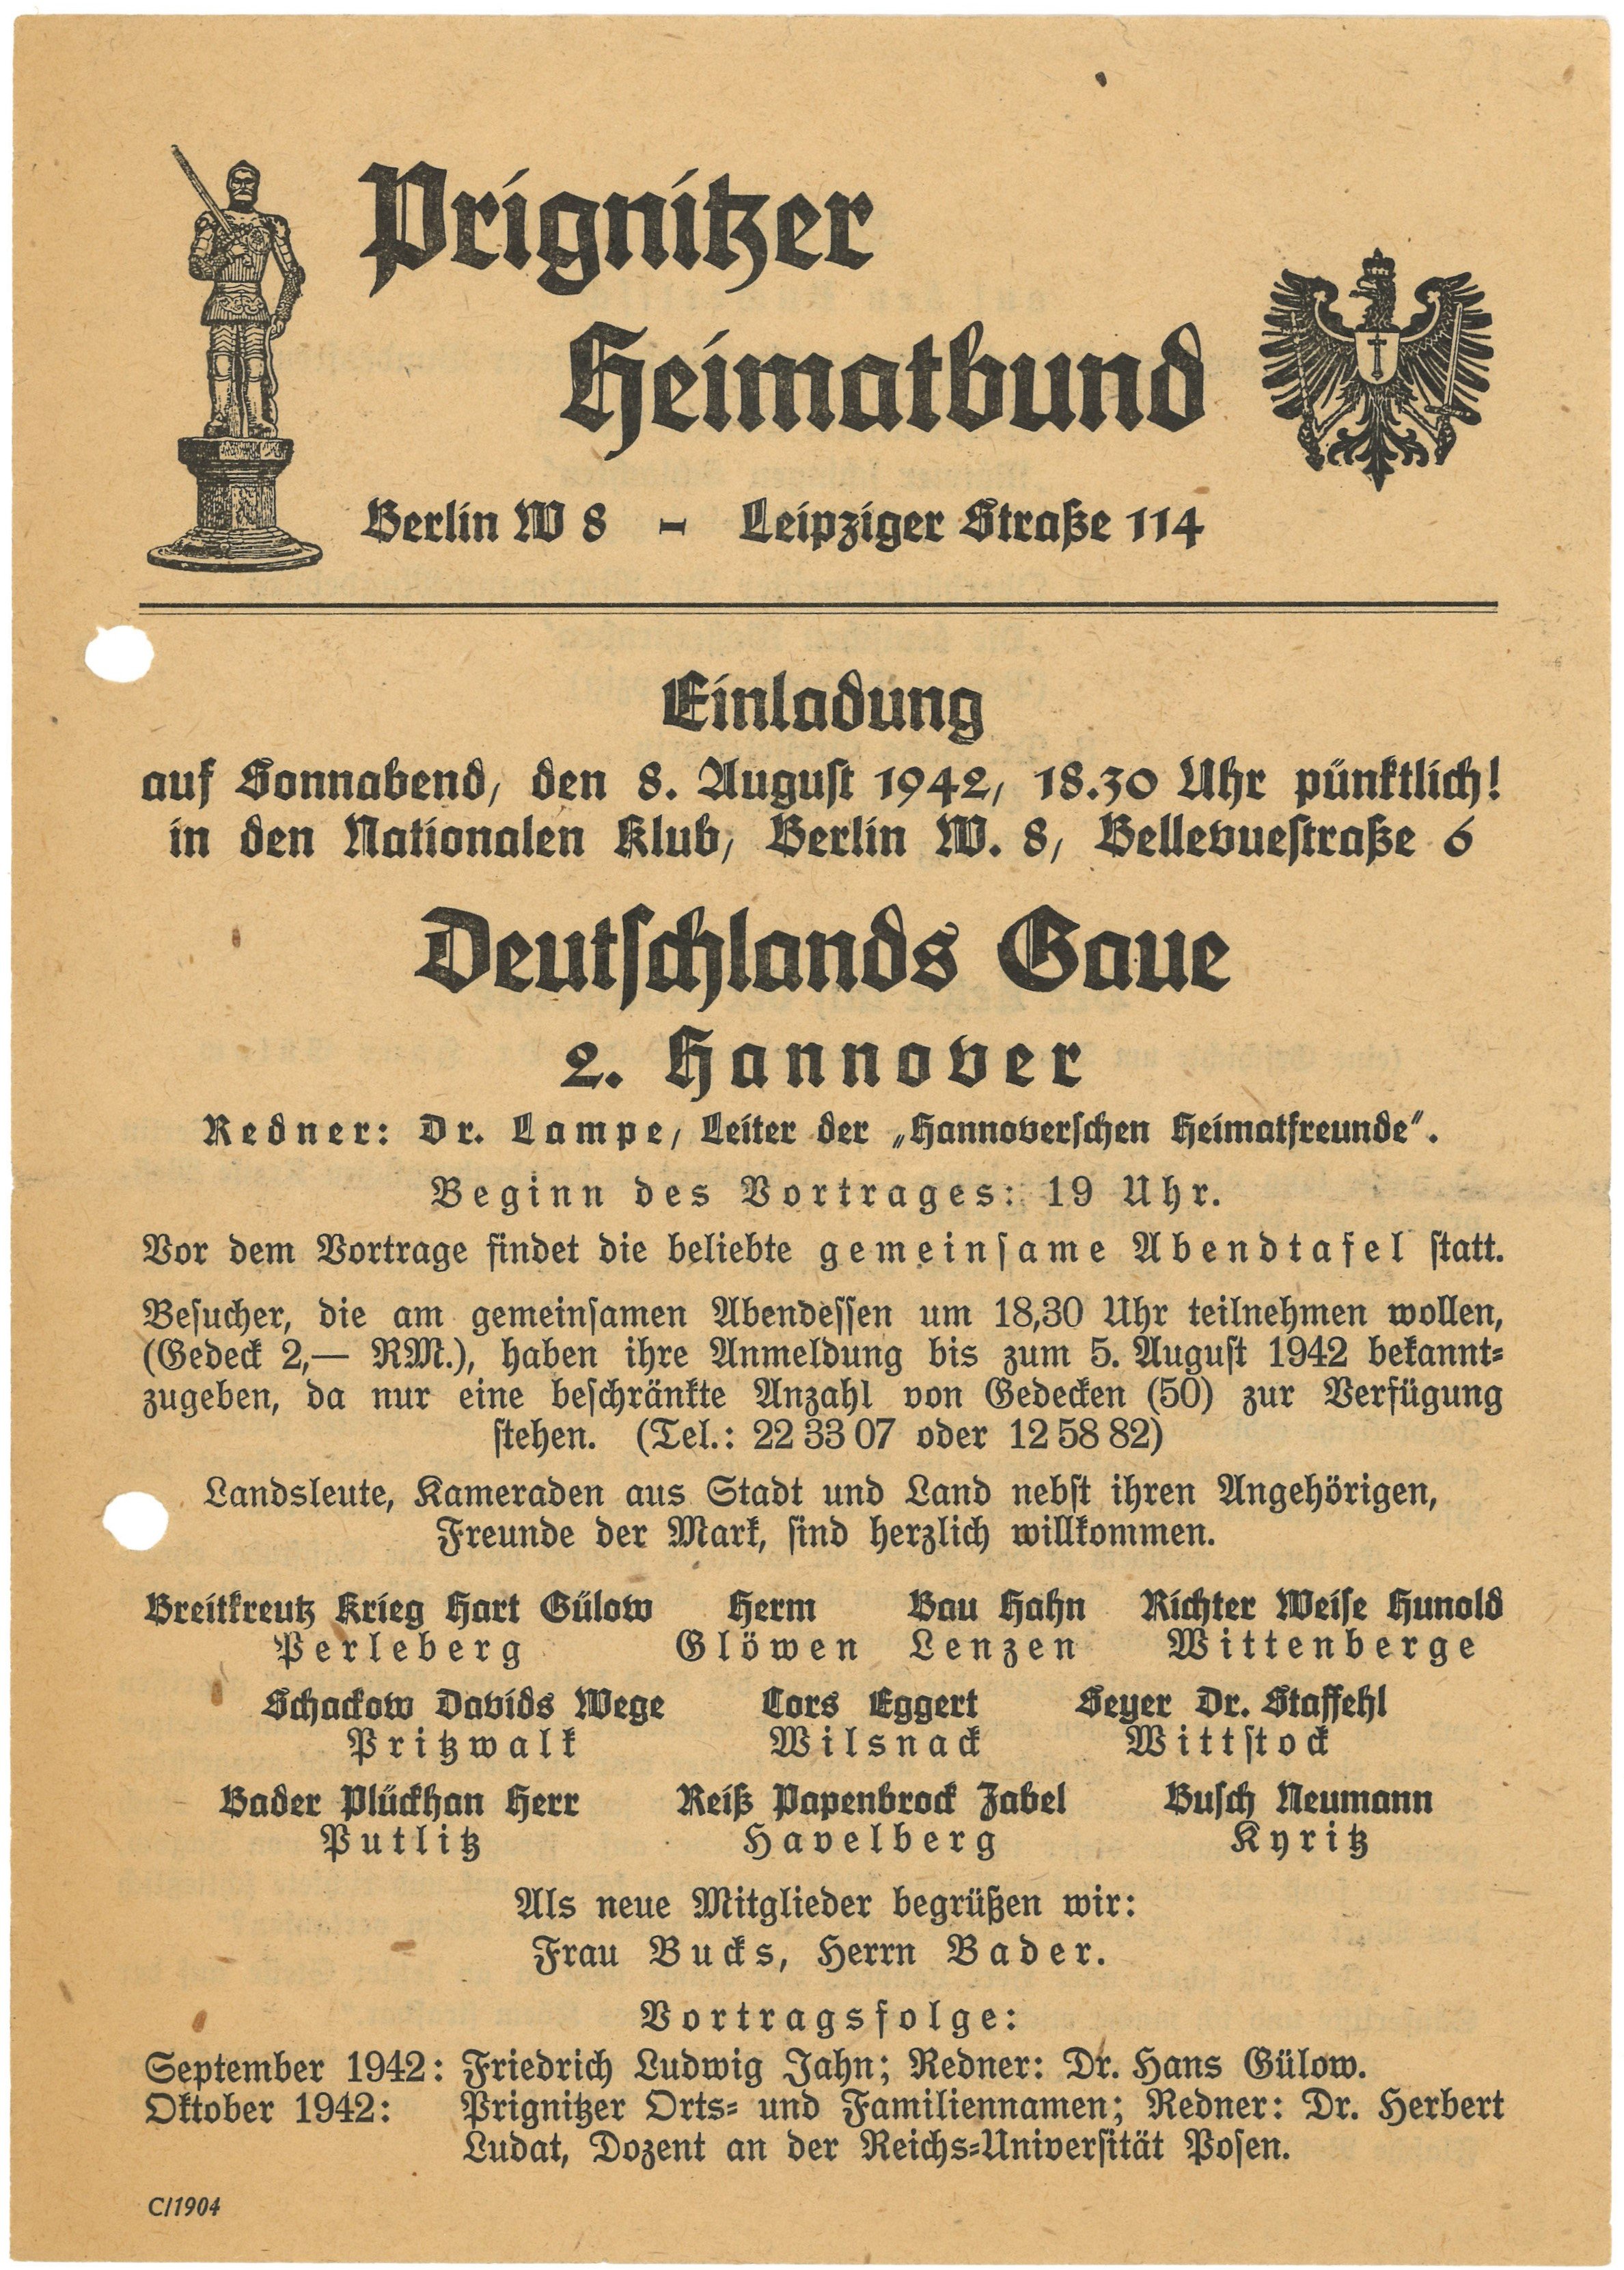 Einladung des Prignitzer Heimatbundes in Berlin zu einer Vortragsveranstaltung 1942 (Landesgeschichtliche Vereinigung für die Mark Brandenburg e.V., Archiv CC BY)